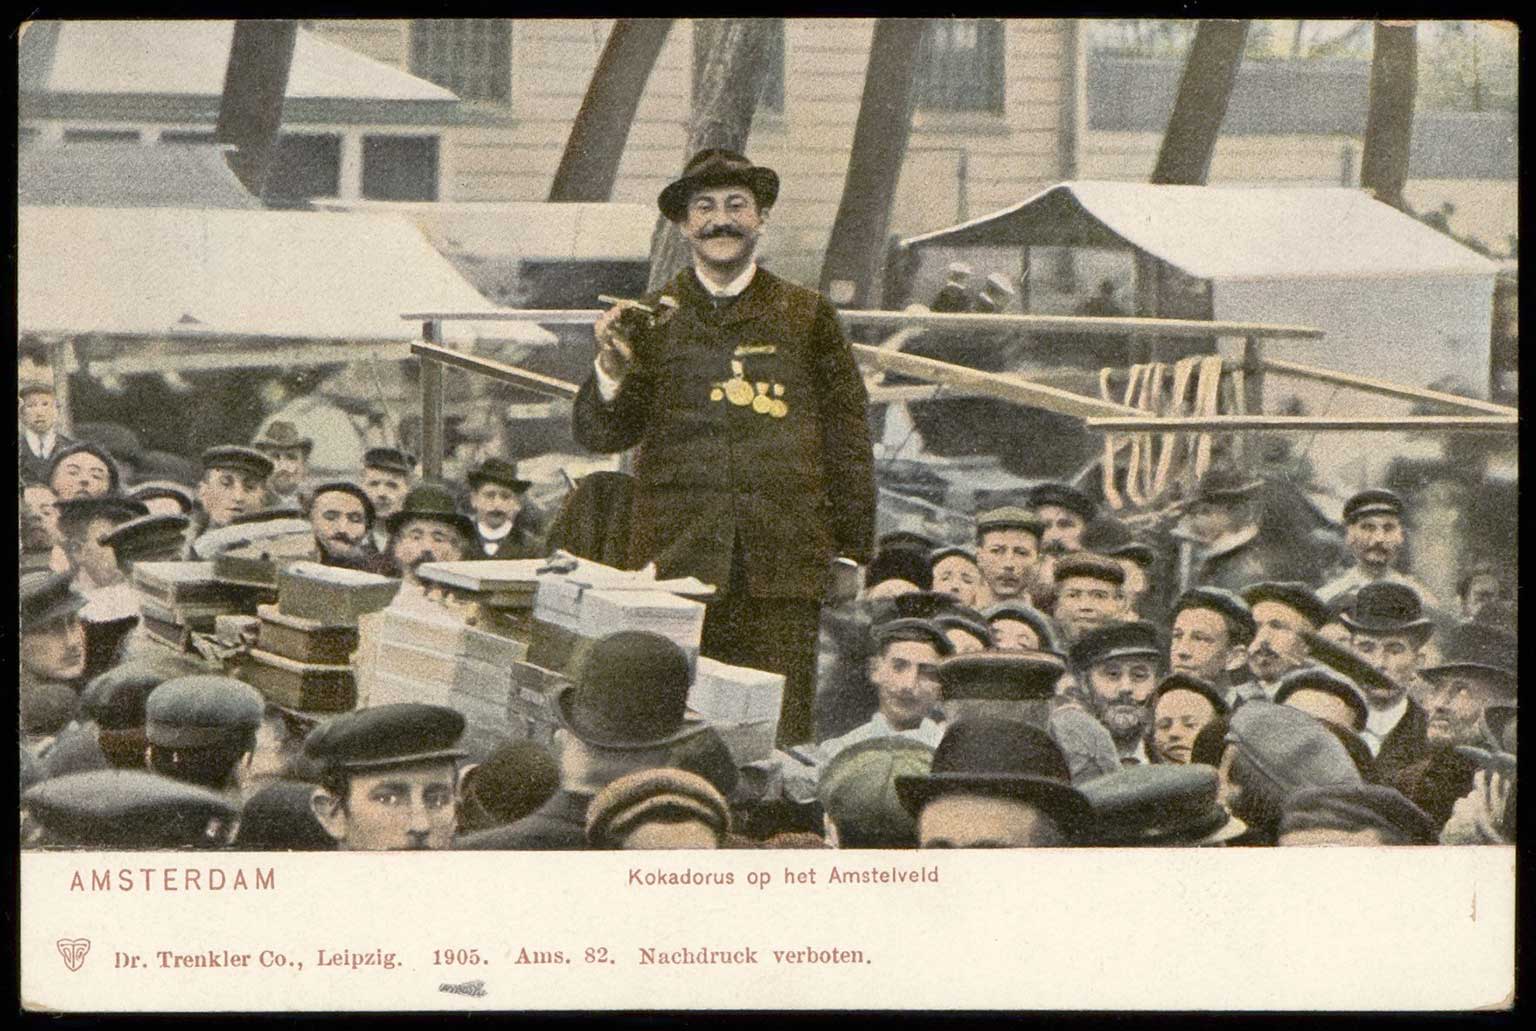 Kokadorus aan het werk op het Amstelveld, Amsterdam, ansichtkaart uit 1905